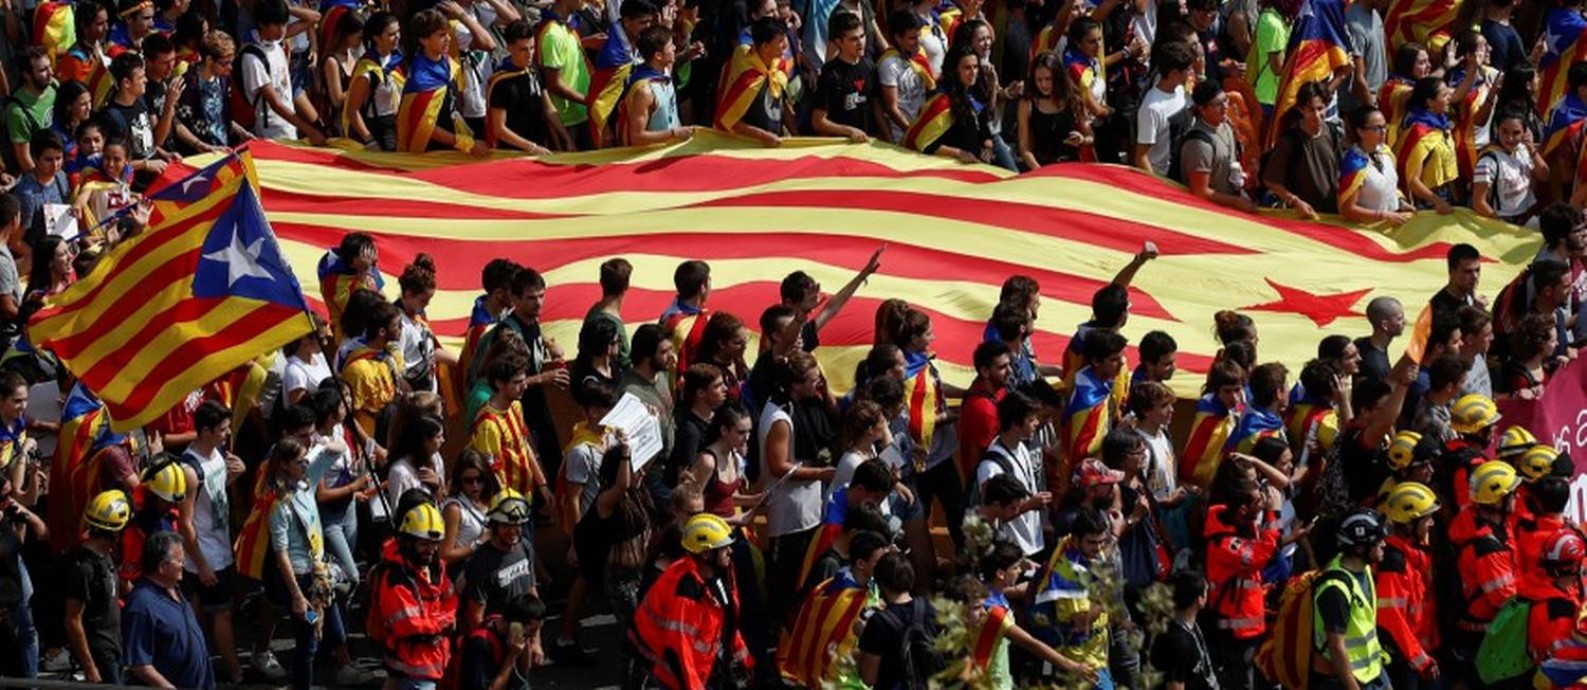 Estudantes em greve protestam em favor de referendo independentista em Barcelona; eles carregam uma Estelada, a bandeira catalã separatista Foto: JUAN MEDINA / REUTERS